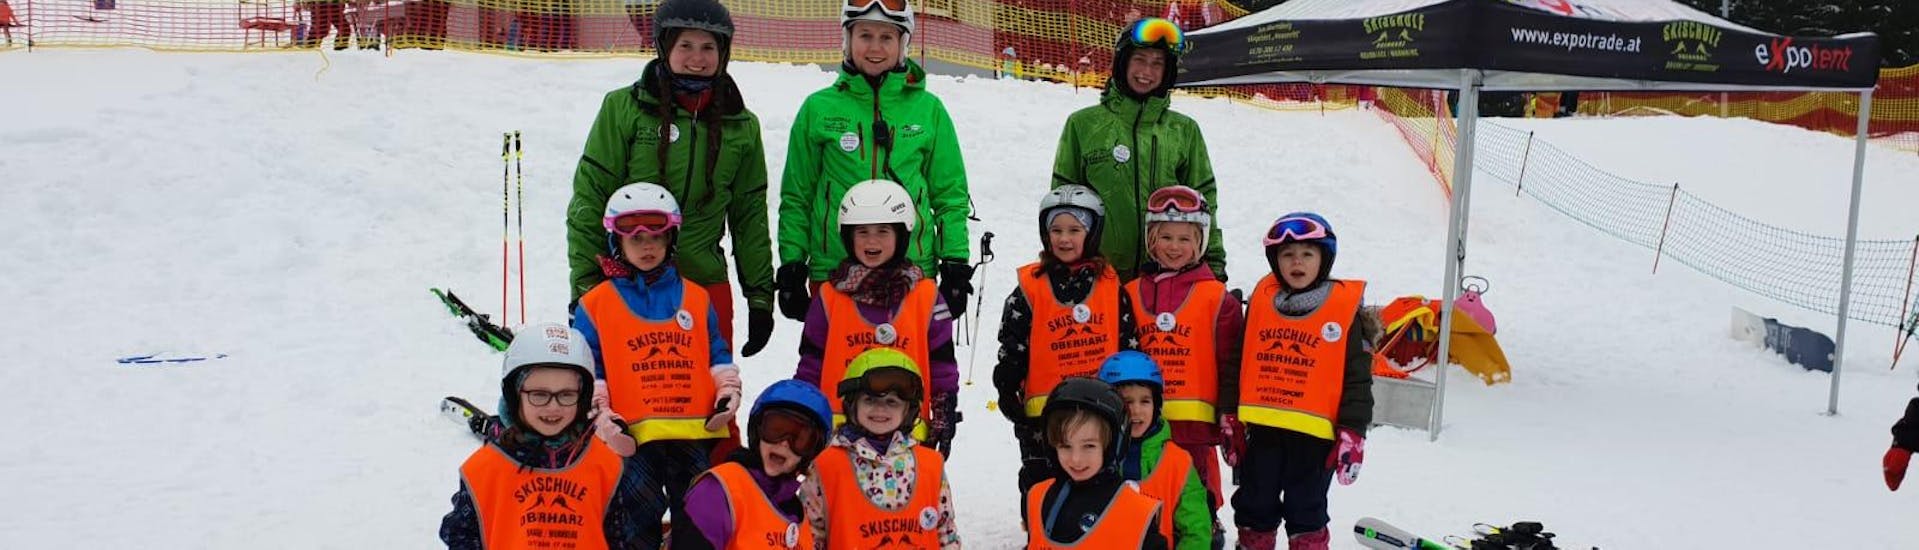 Skilessen voor Kinderen (9-11 jaar) met Ervaring.